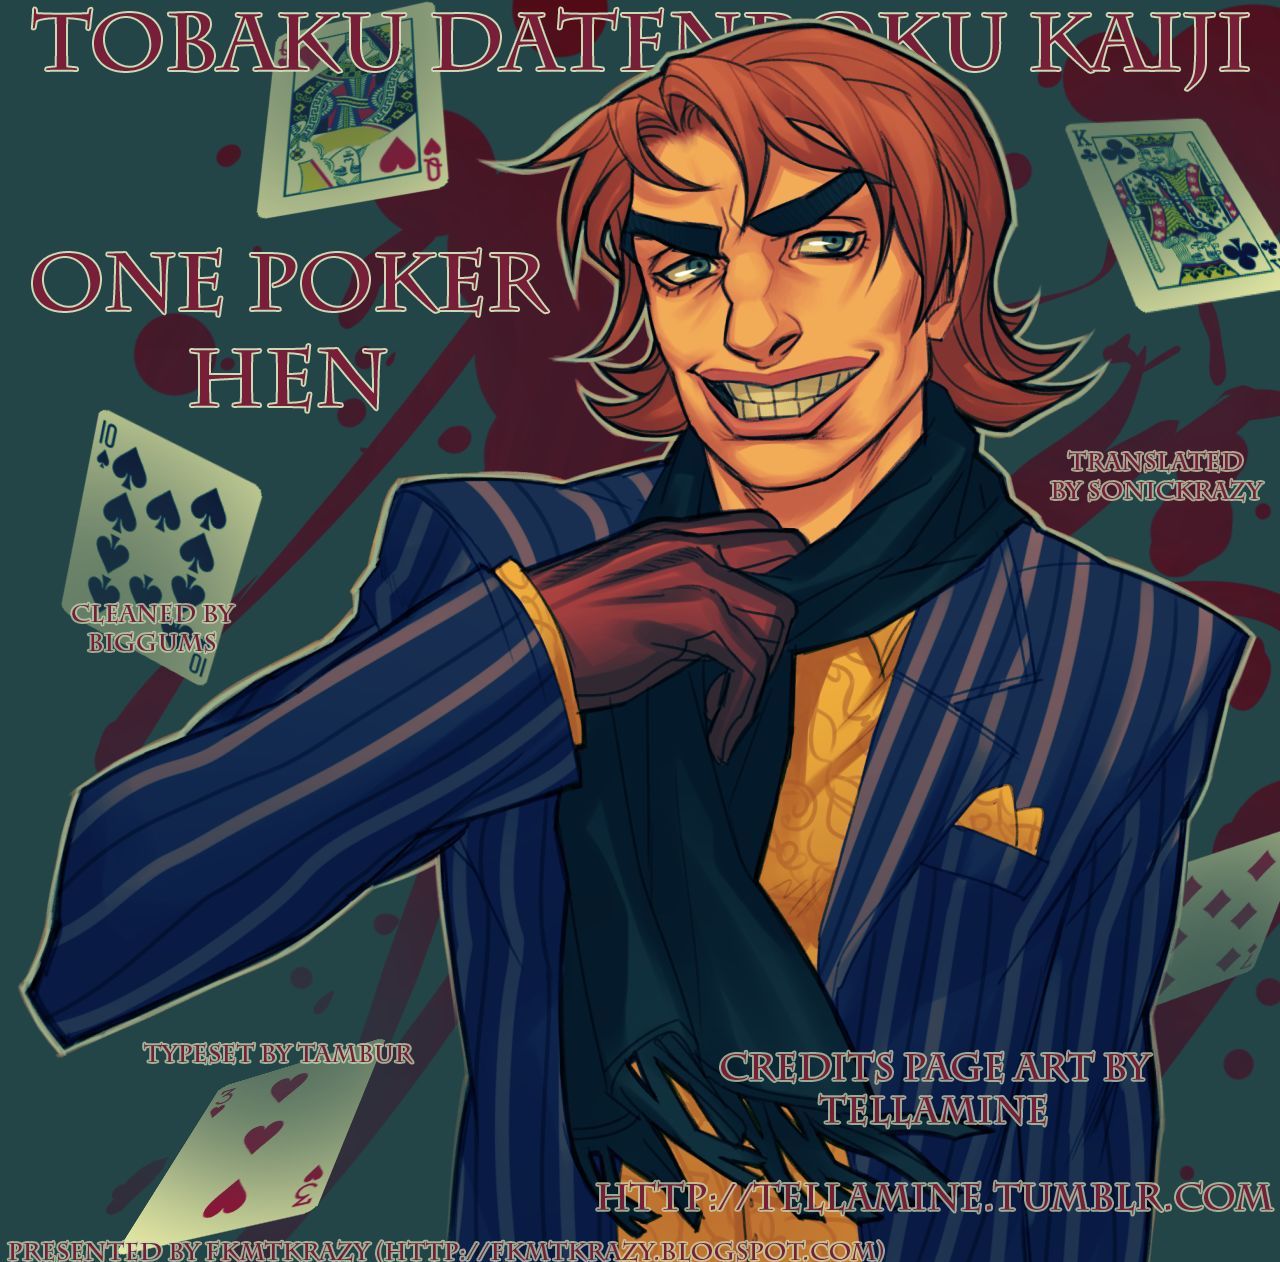 Tobaku Datenroku Kaiji - One Poker Hen 179